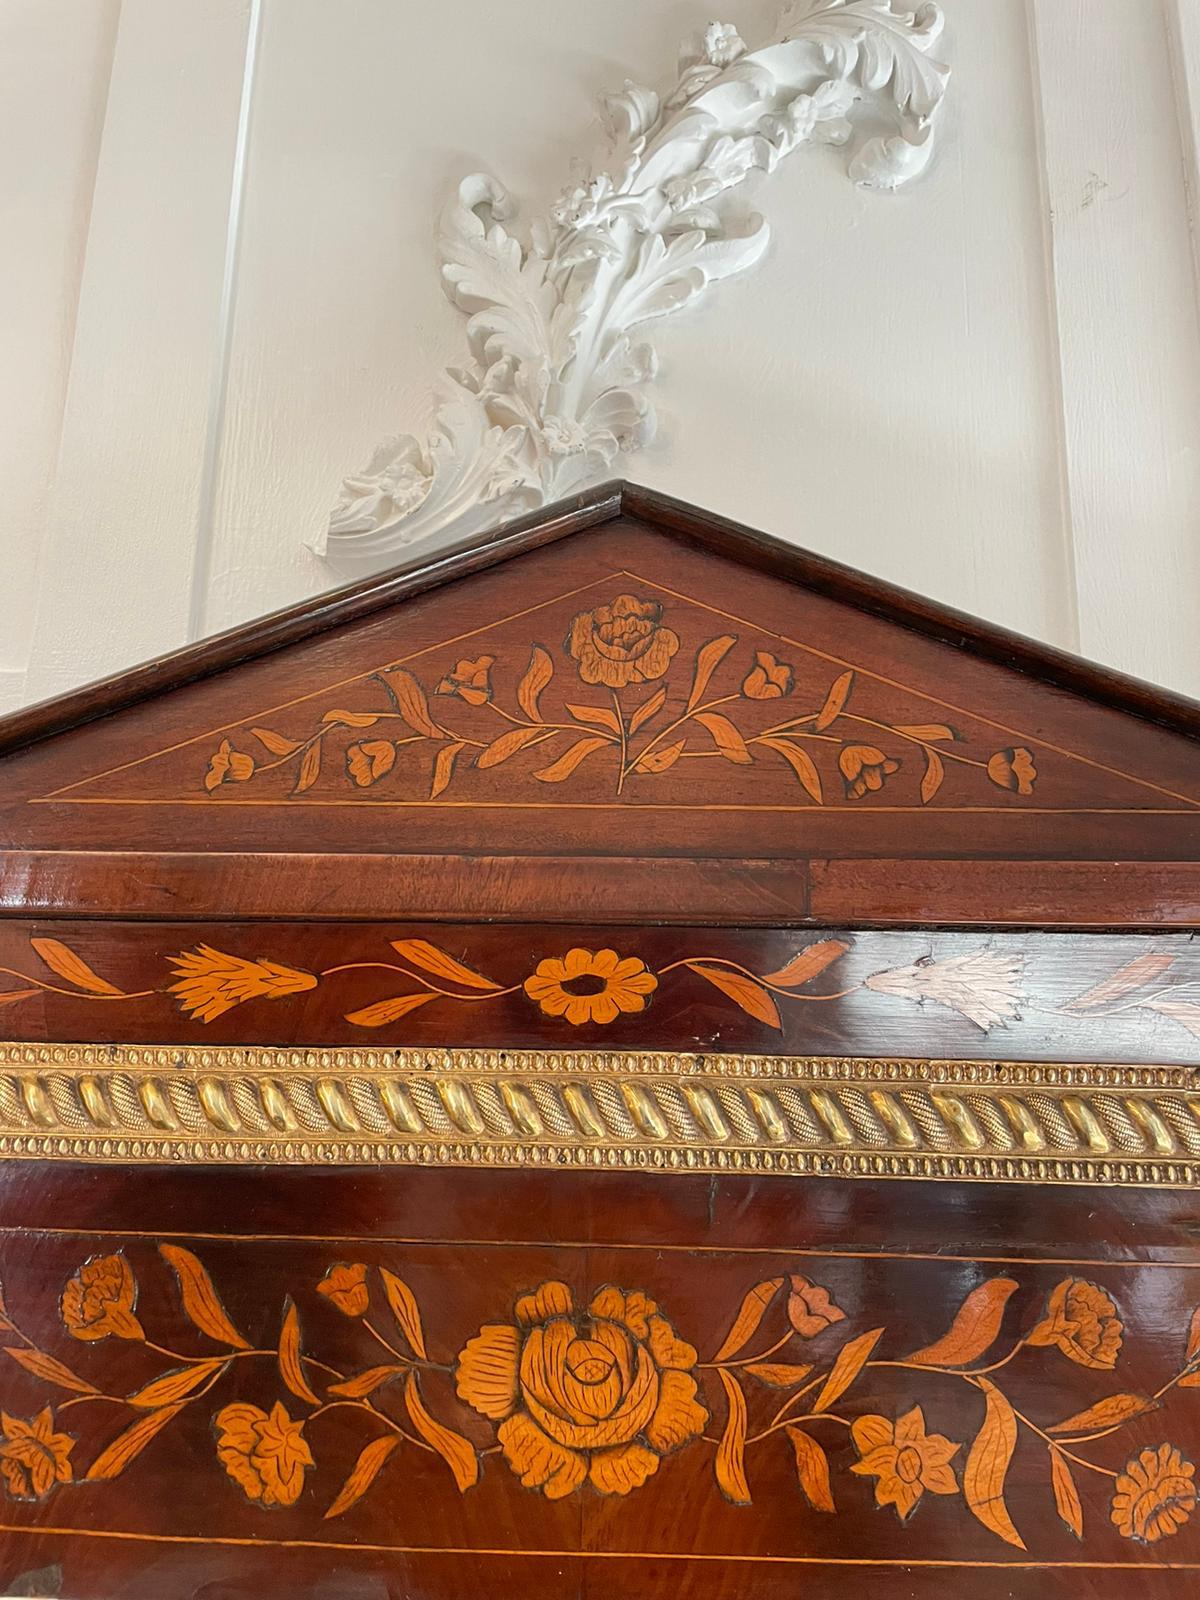 Miroir mural en acajou incrusté de marqueterie hollandaise de George III, de qualité exceptionnelle, avec un fantastique décor de marqueterie florale et une décoration en laiton ornée, ainsi que la plaque de miroir d'origine à bord biseauté.

Il